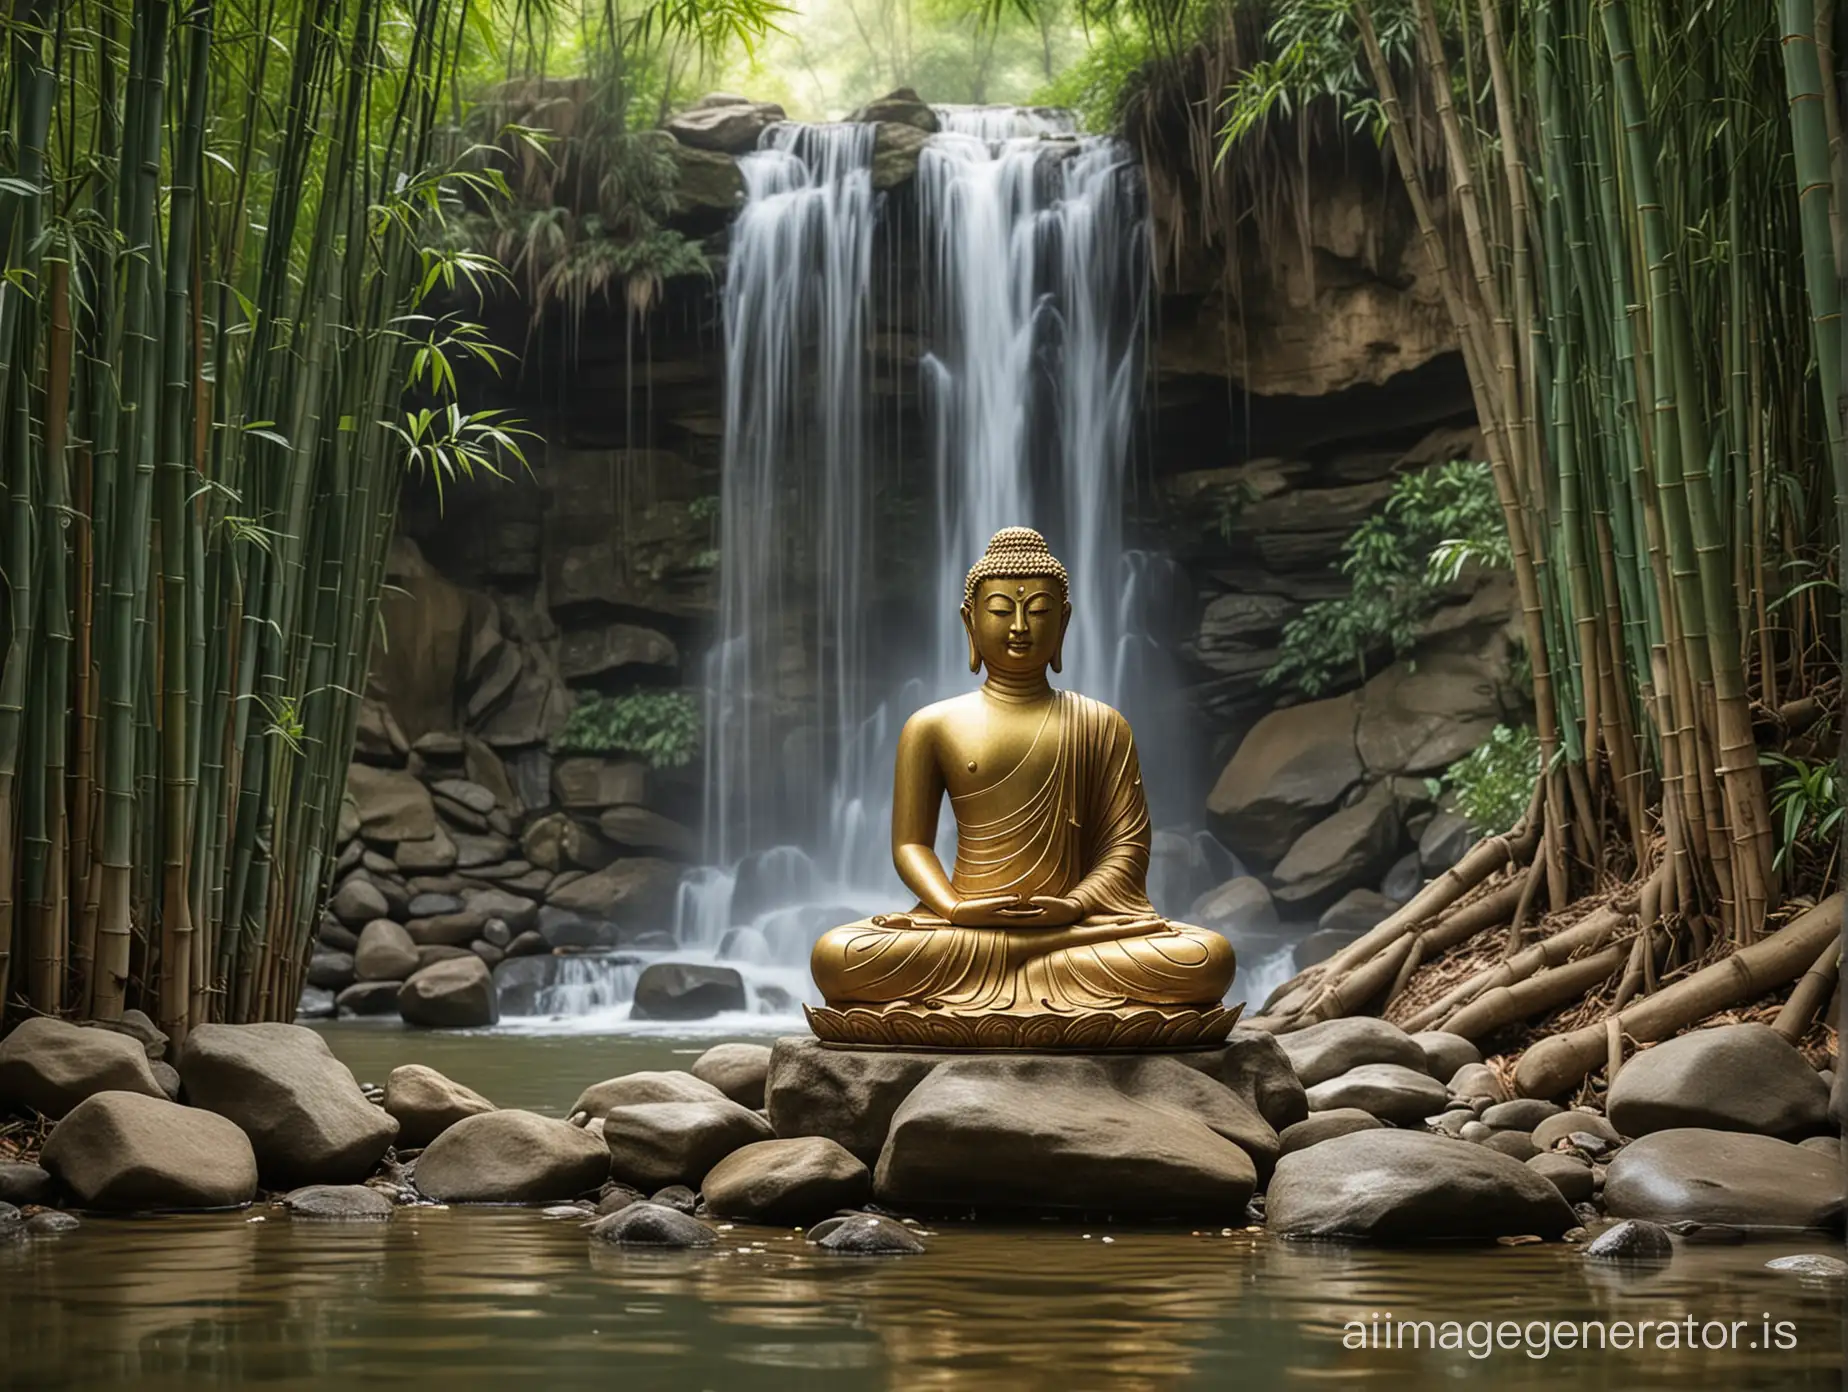 Serene-Buddha-Meditating-Amidst-Lush-Bamboo-and-Majestic-Waterfall